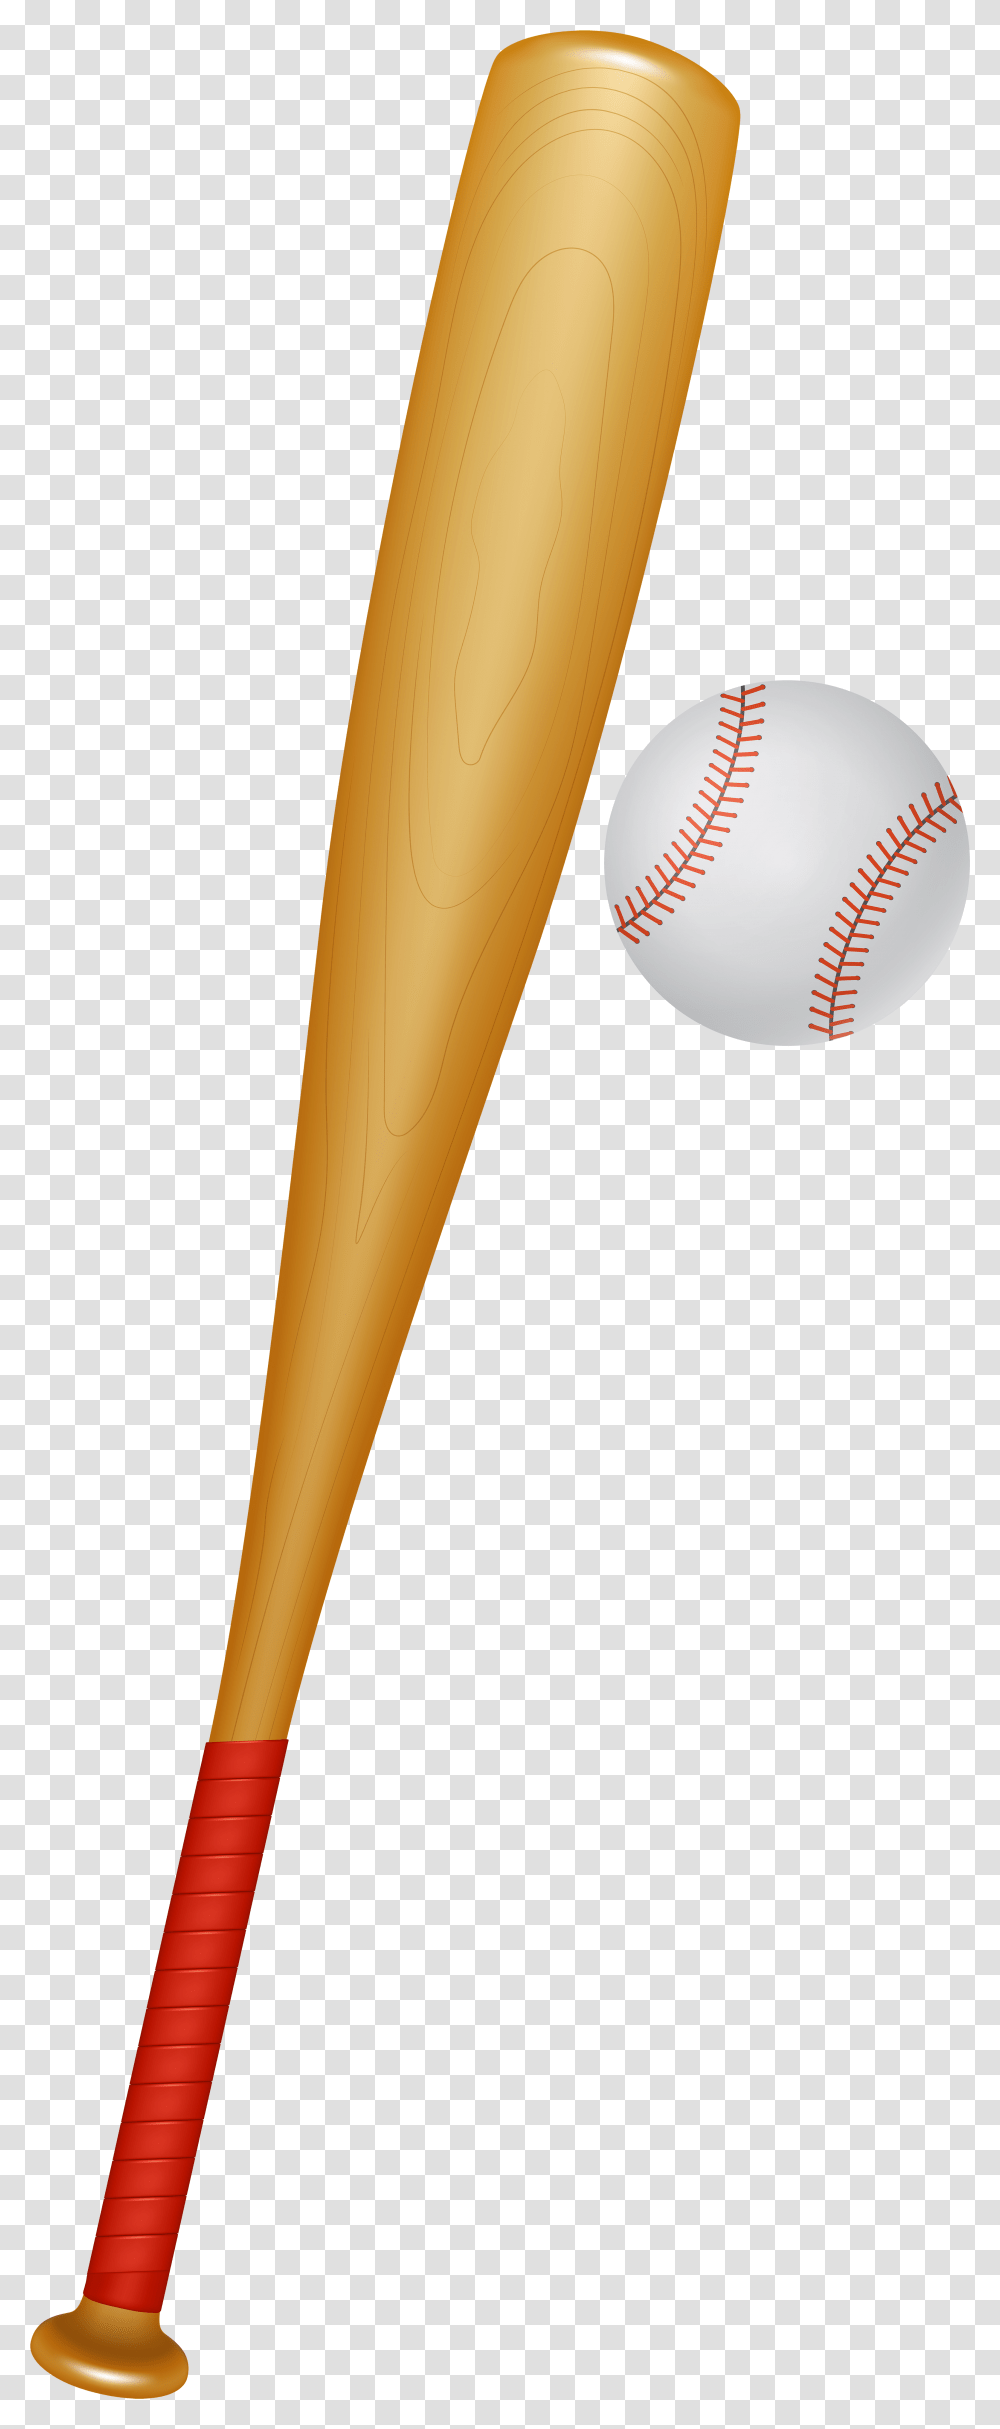 Baseball Bat Clipart Format Baseball And Bat, Sport, Sports, Team Sport, Softball Transparent Png